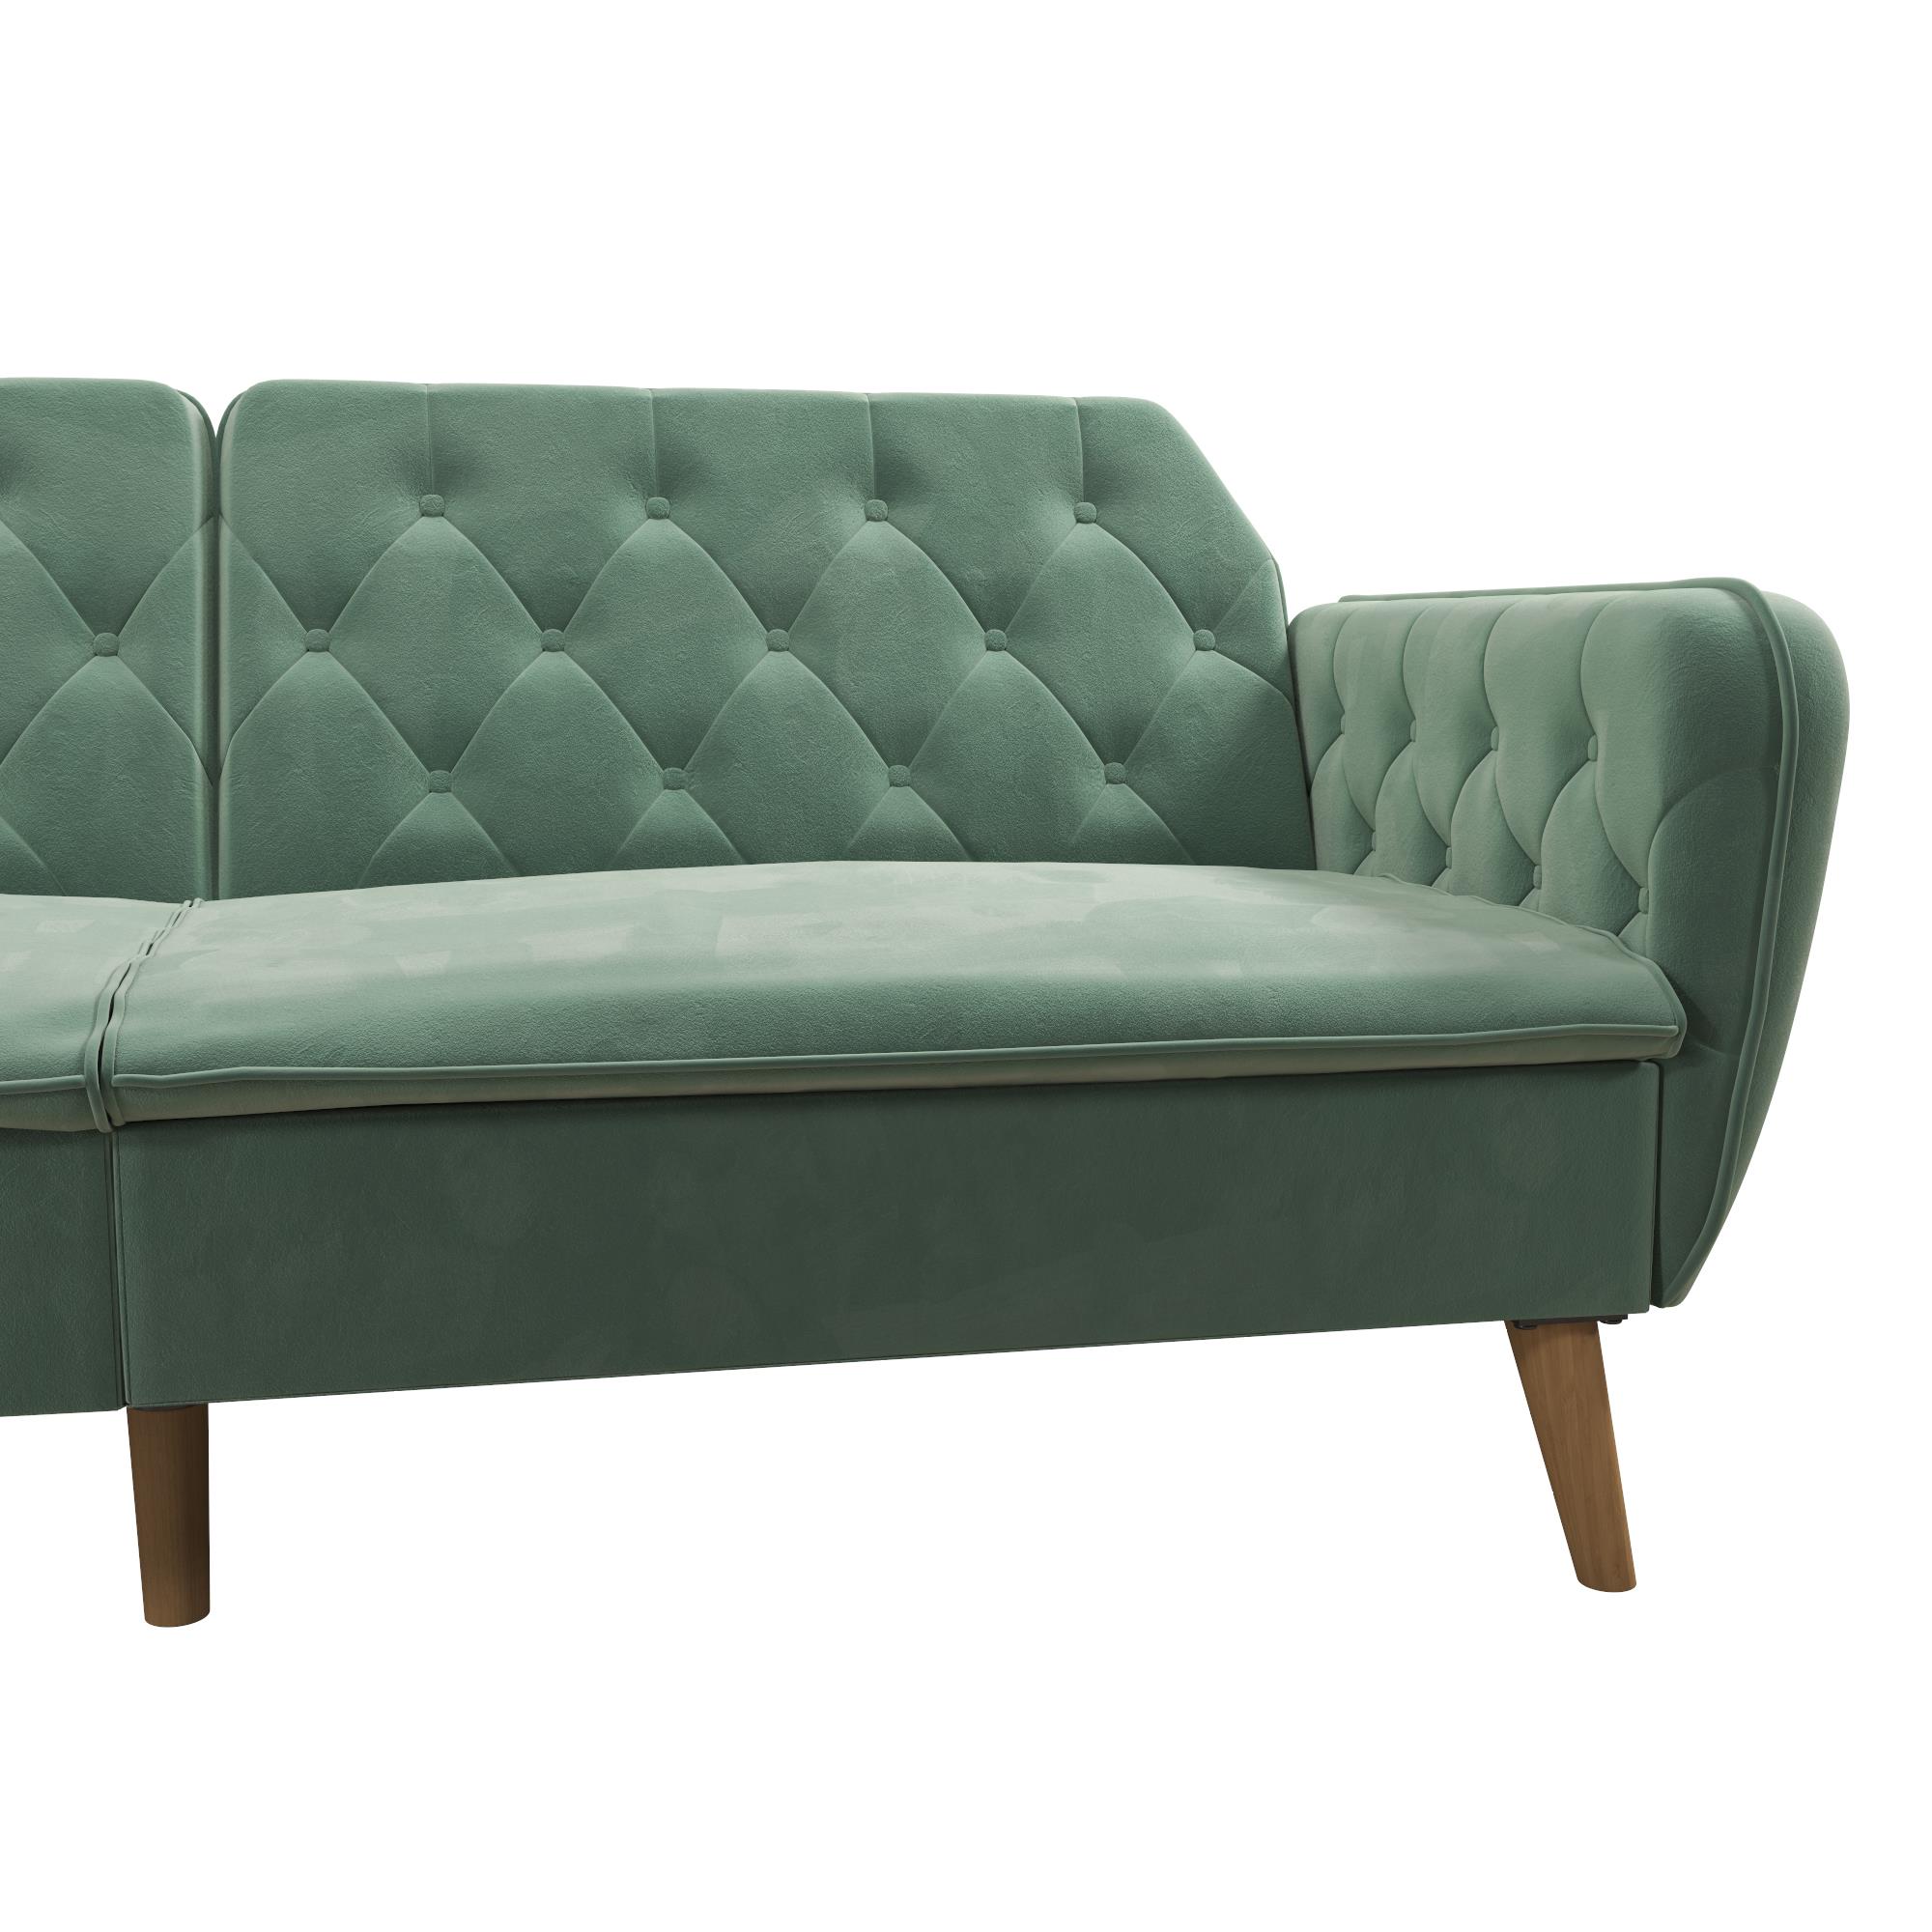 Novogratz Tallulah Memory Foam Futon and Sofa Bed, Light Green Velvet - image 4 of 17